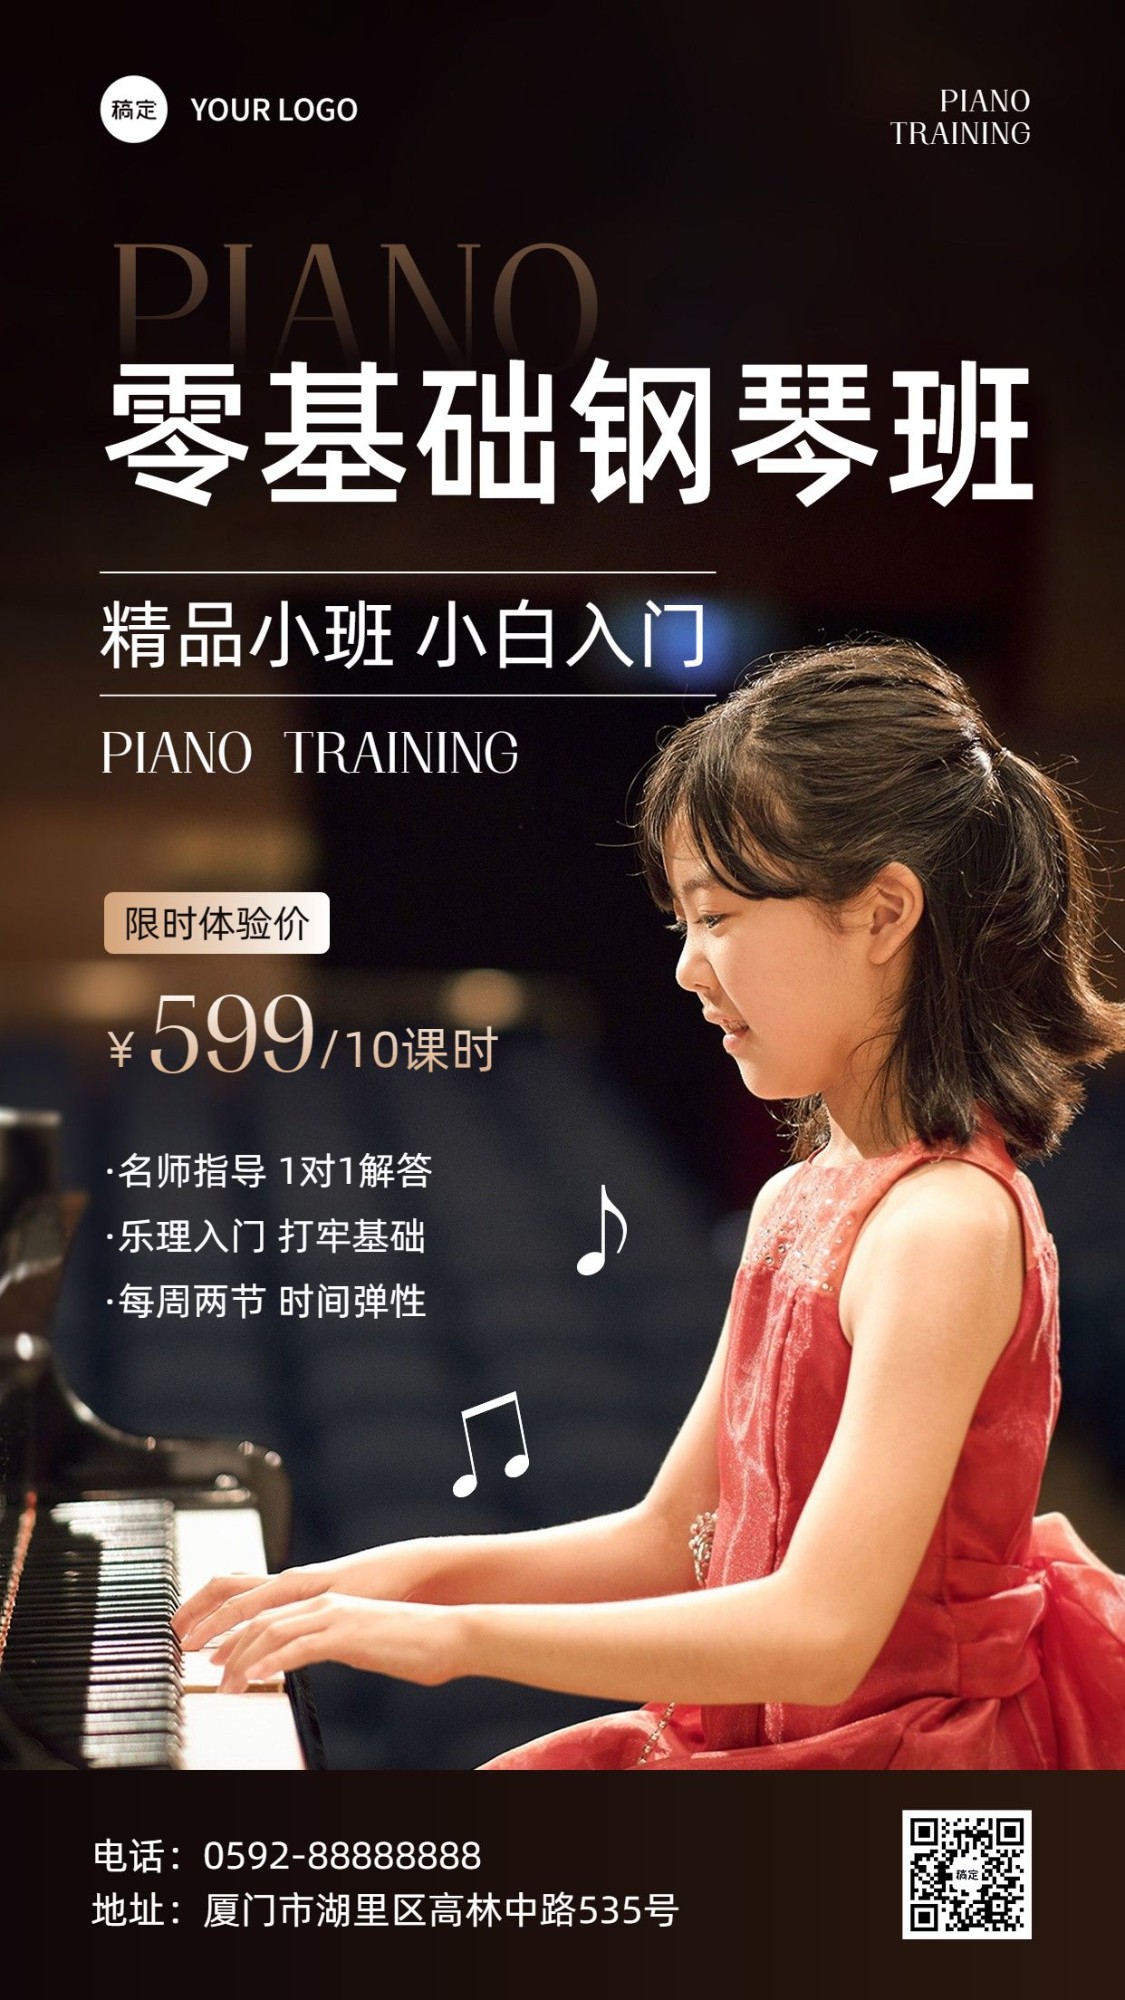 24艺术兴趣培训班钢琴课招生宣传手机海报预览效果